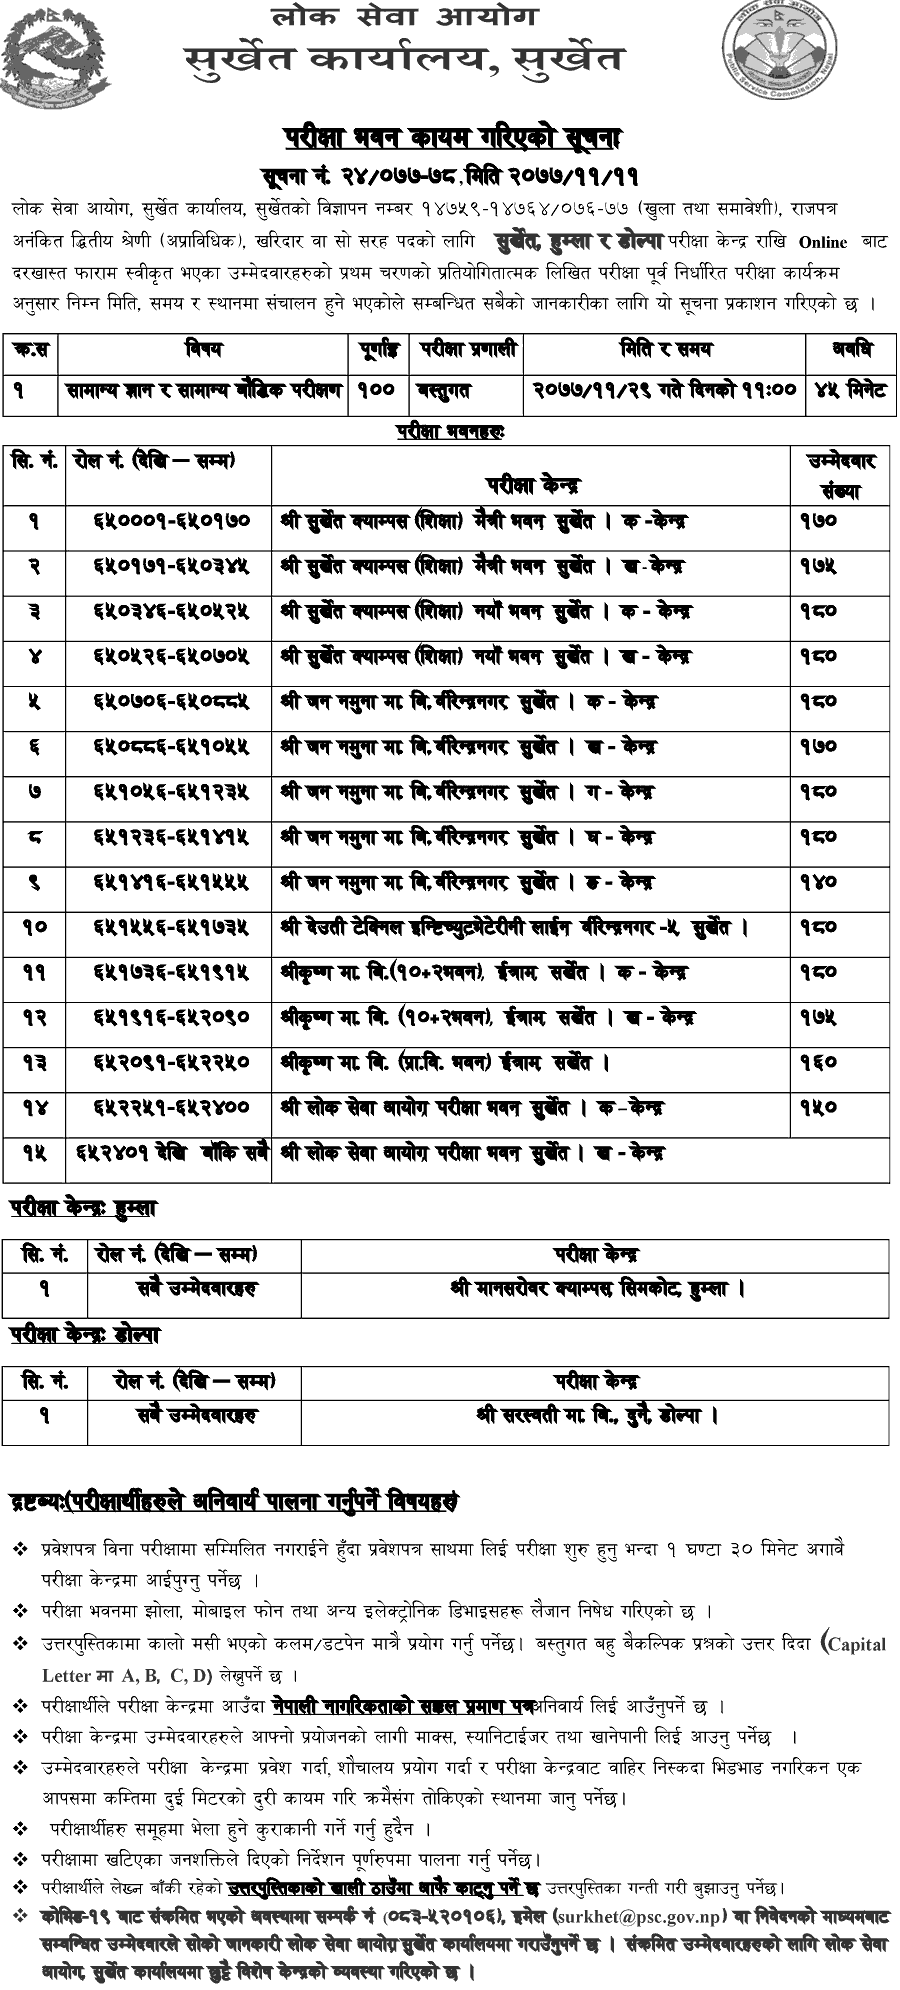 Kharidar 4th Level First Phase Exam Center Surkhet Lok Sewa Aayog